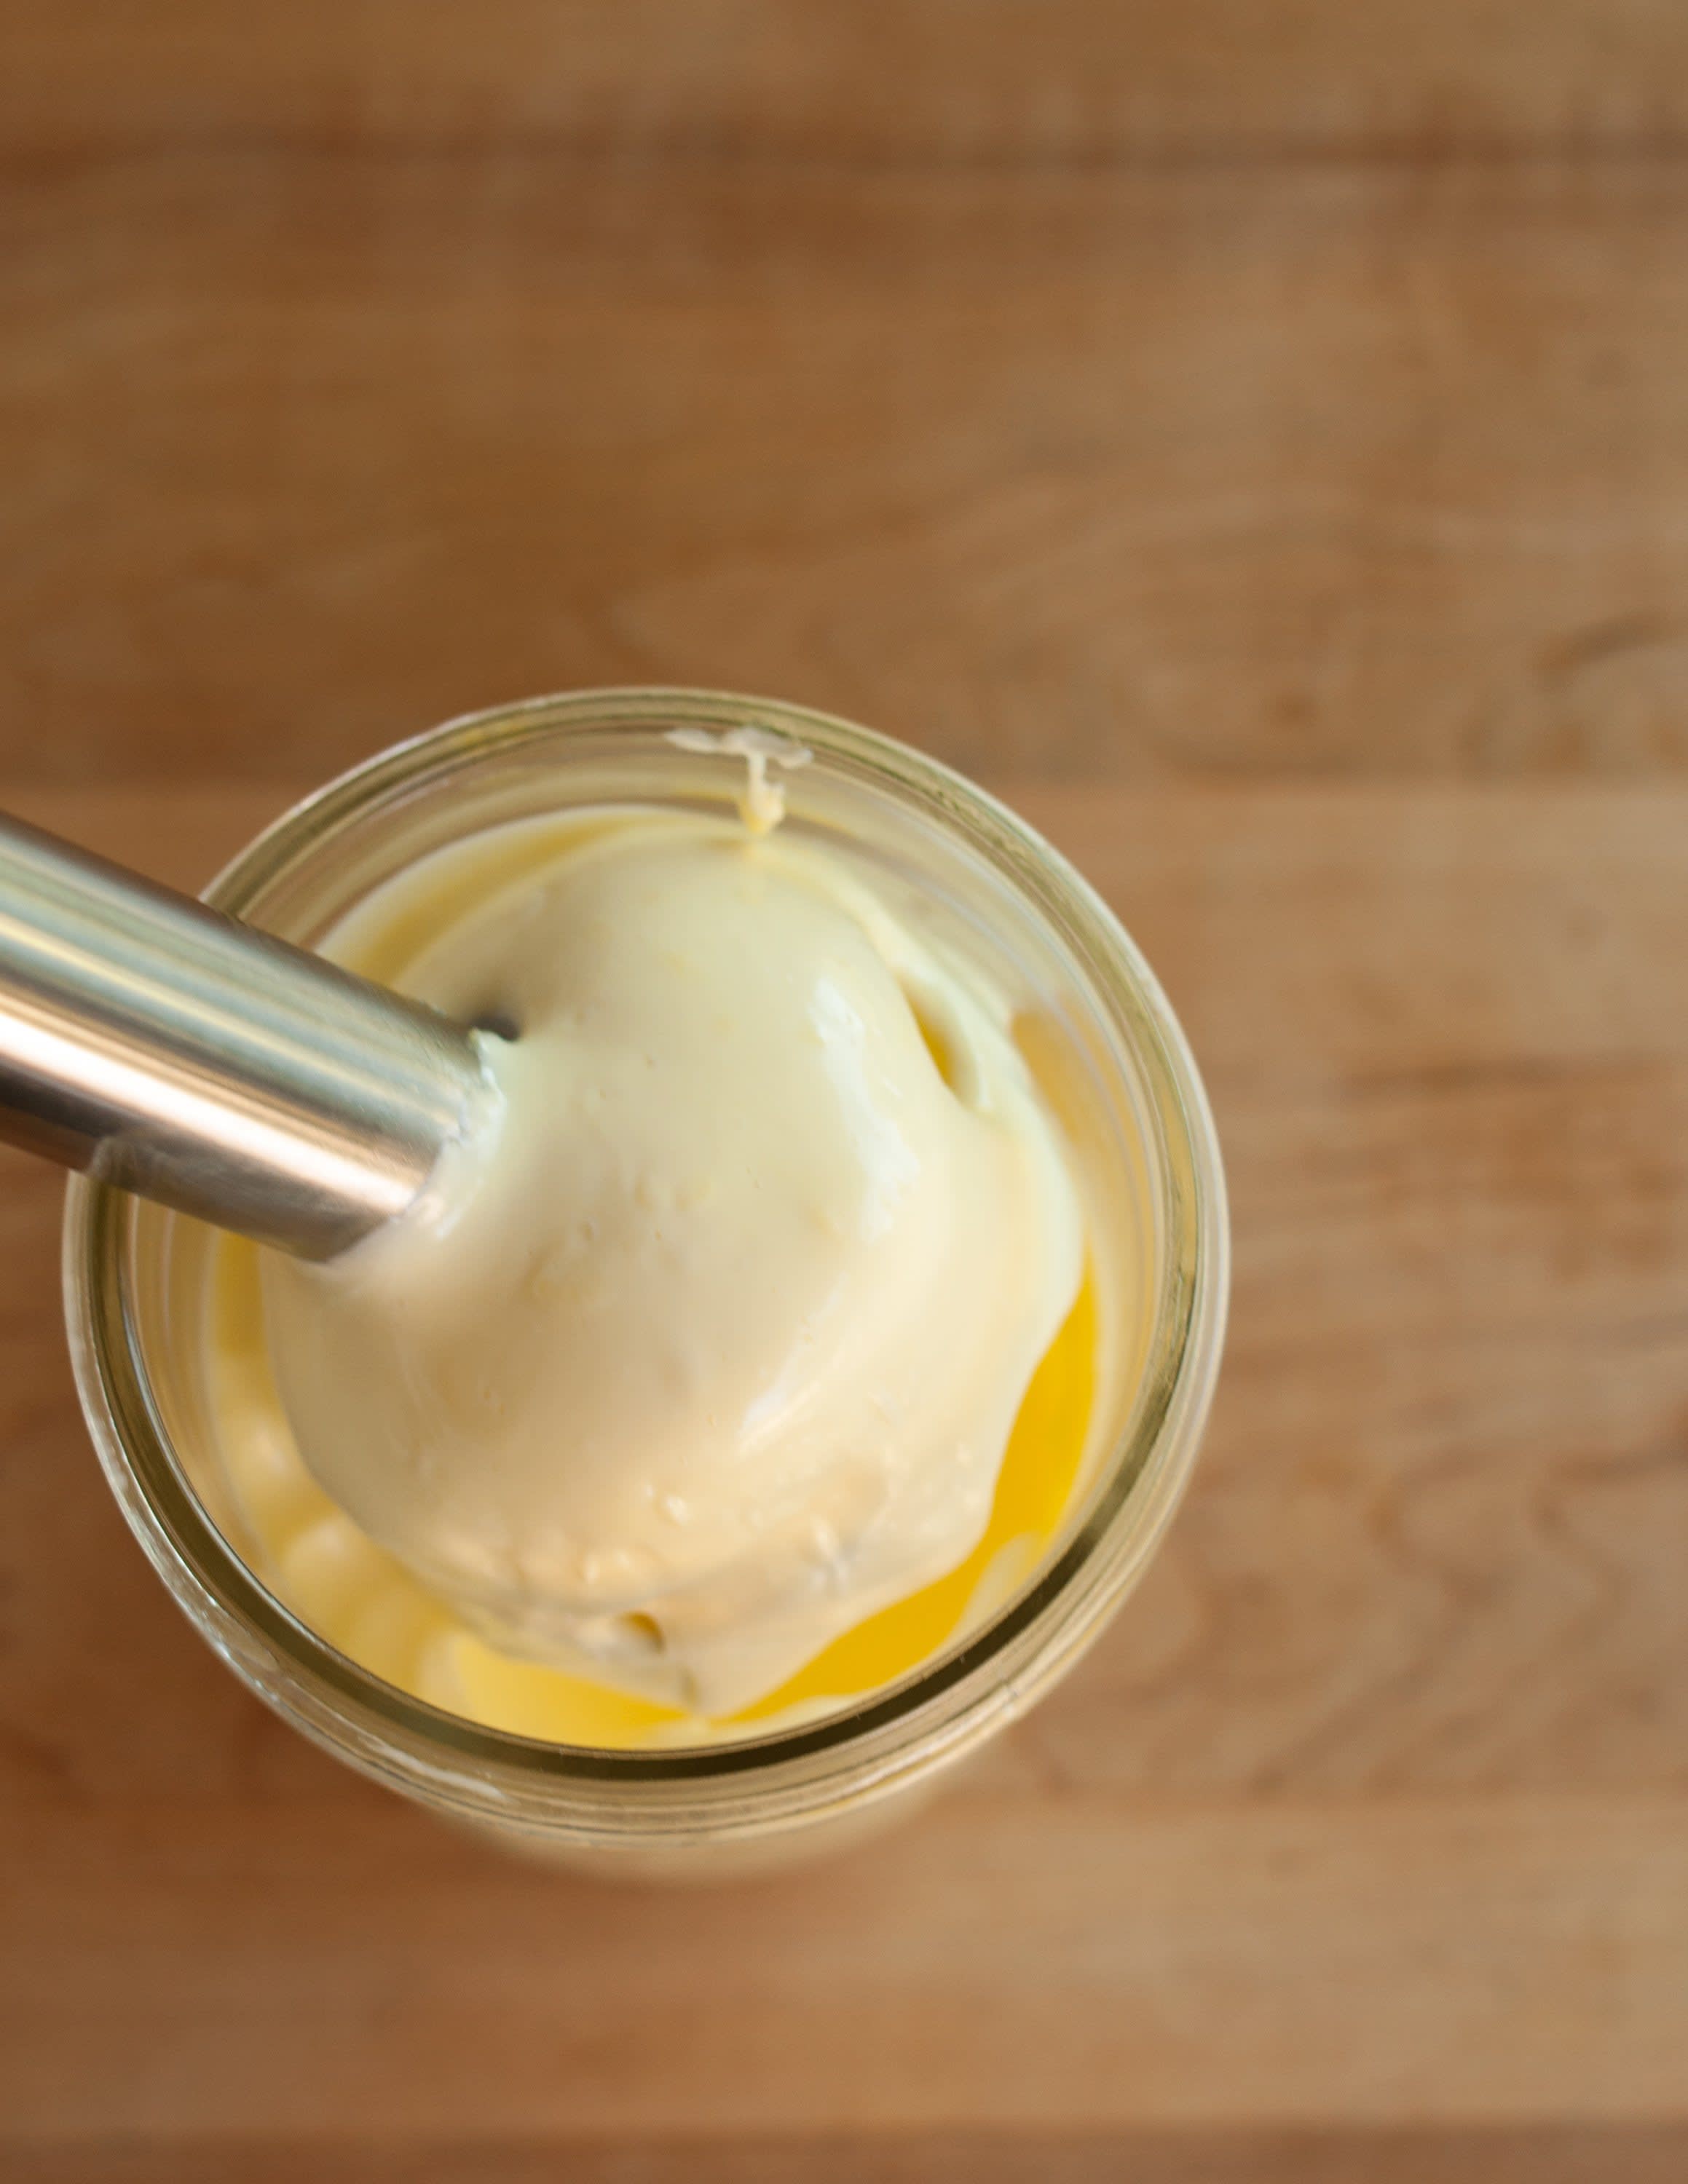 homemade olive oil mayo emulsion blender